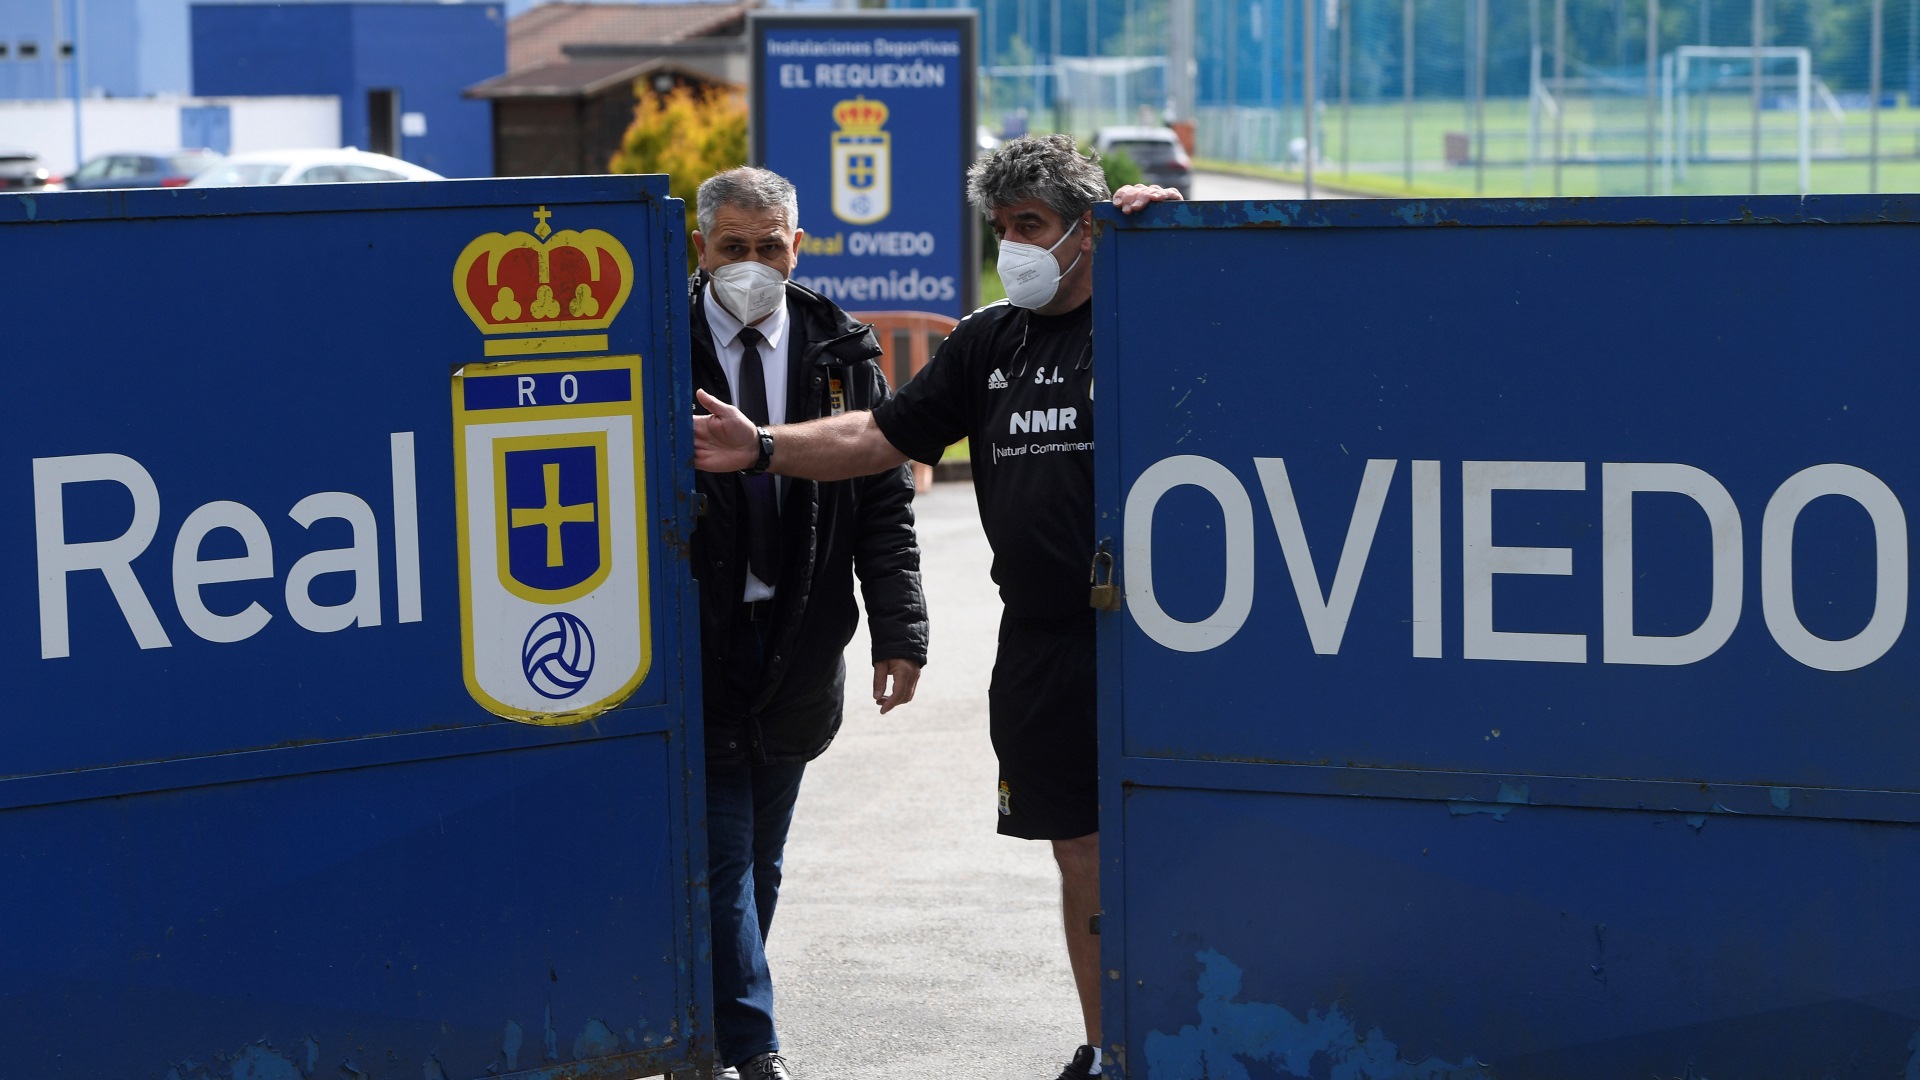 Real Oviedo - Últimas noticias de Real Oviedo en El Comercio